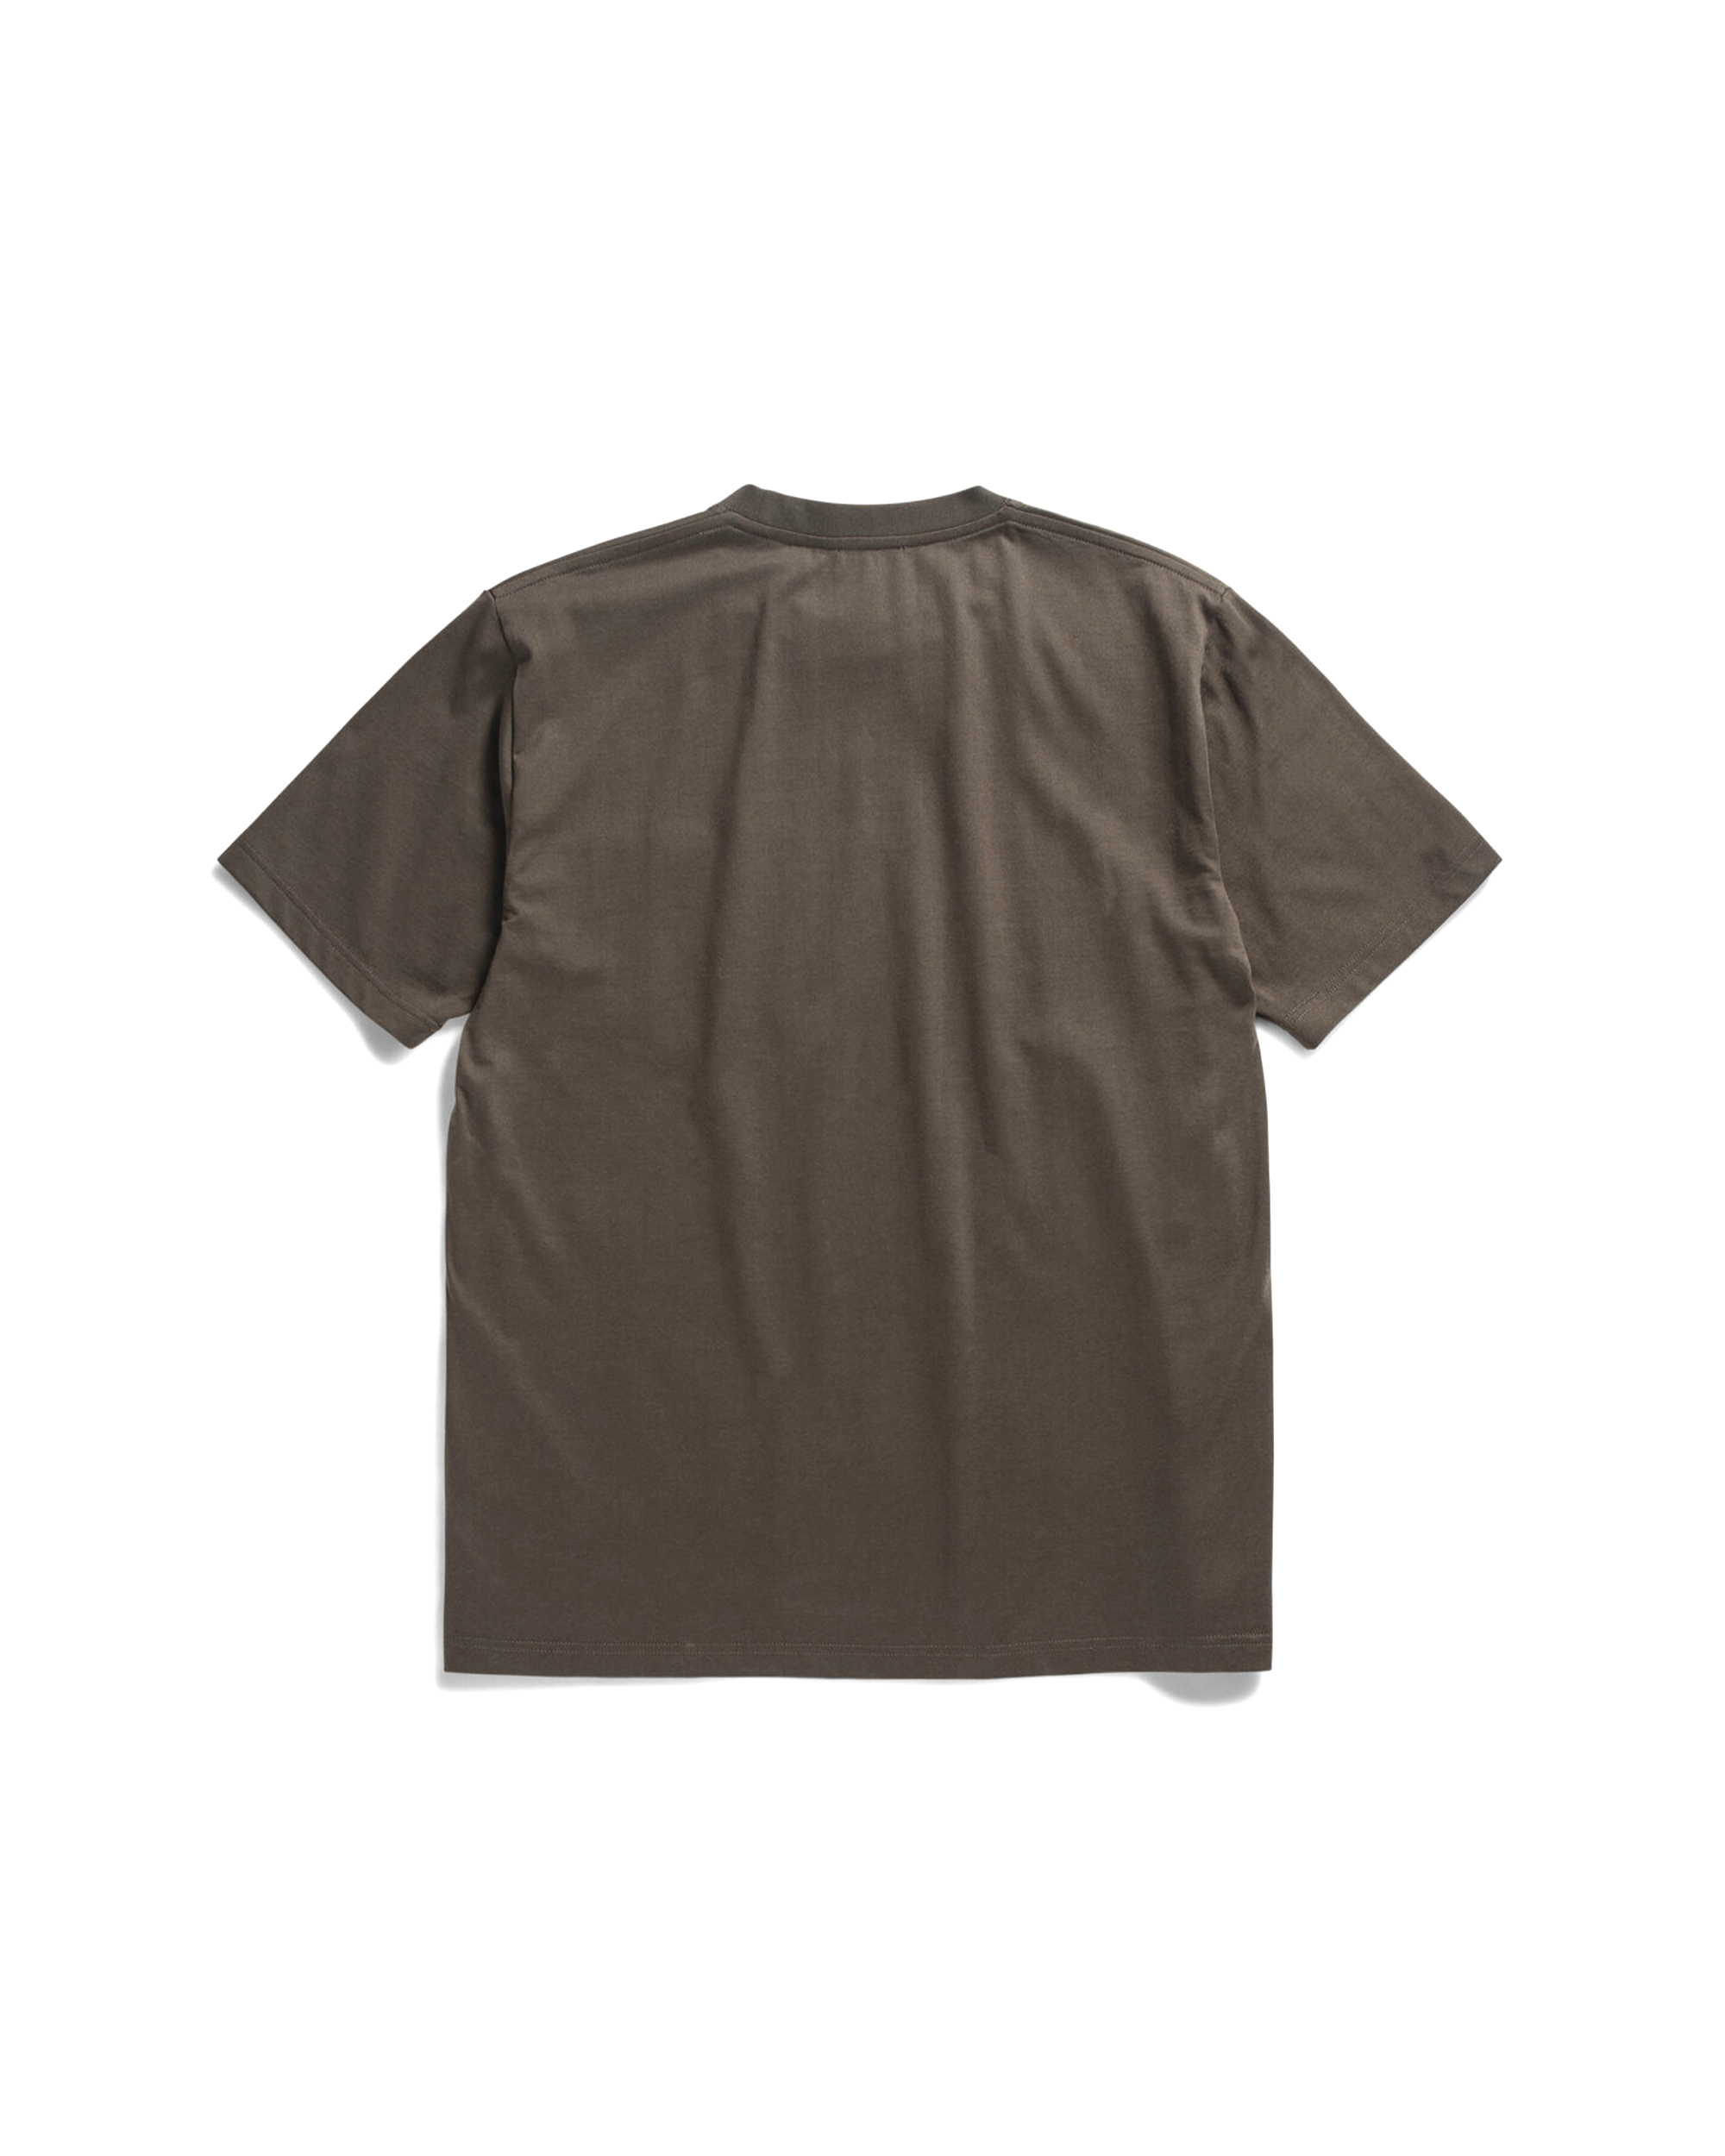 Johannes Organic Pocket T-shirt - Beech Green